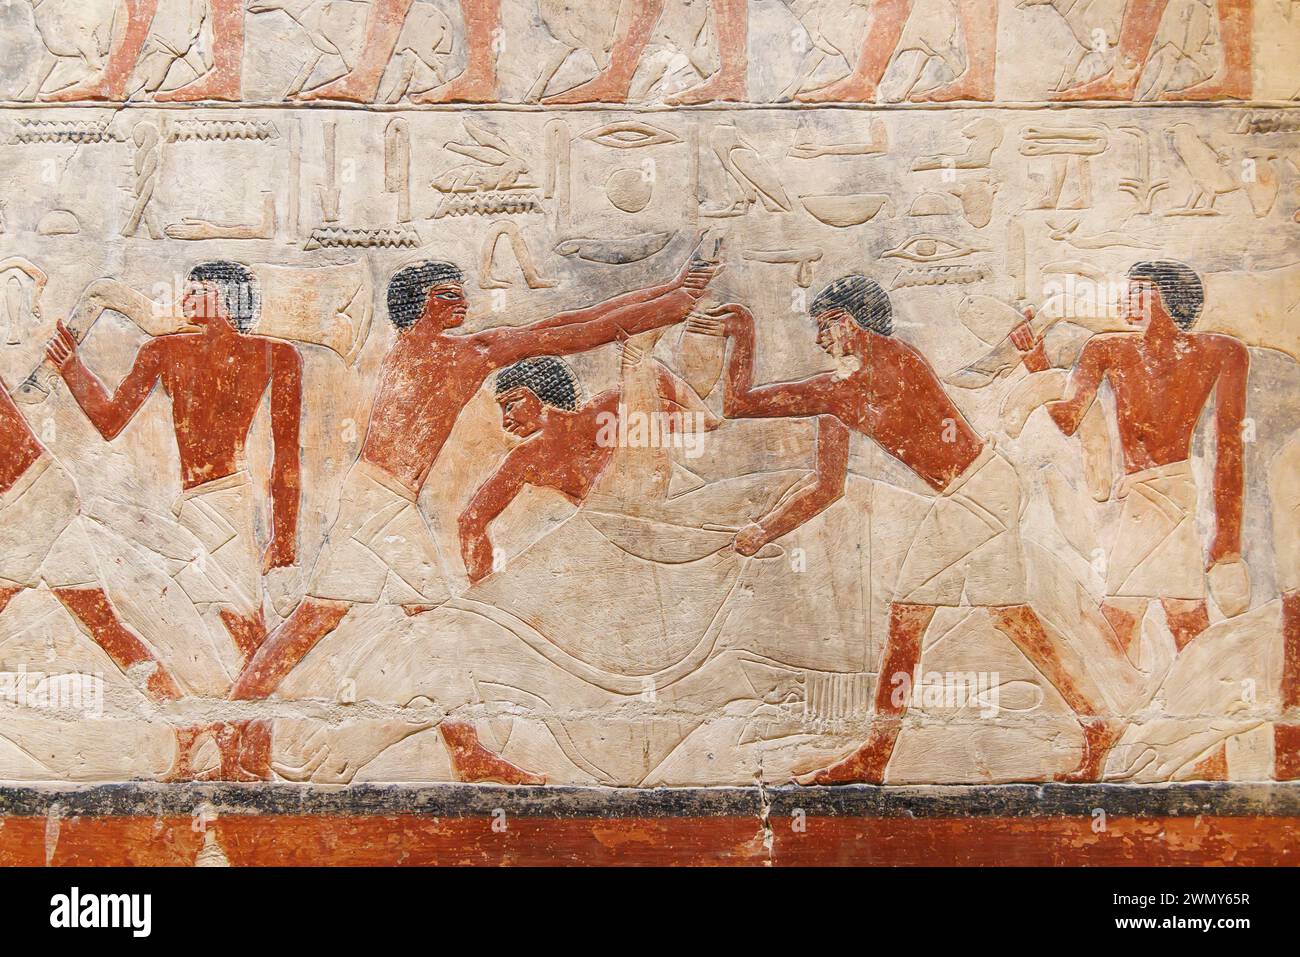 Ägypten, Kairo, Sakkara, Memphis und seine Nekropole, die Pyramidenfelder von Gizeh bis Dahshur, die von der UNESCO zum Weltkulturerbe erklärt wurden, Mastaba von Nikauisesi, Kuhschlachtung Stockfoto